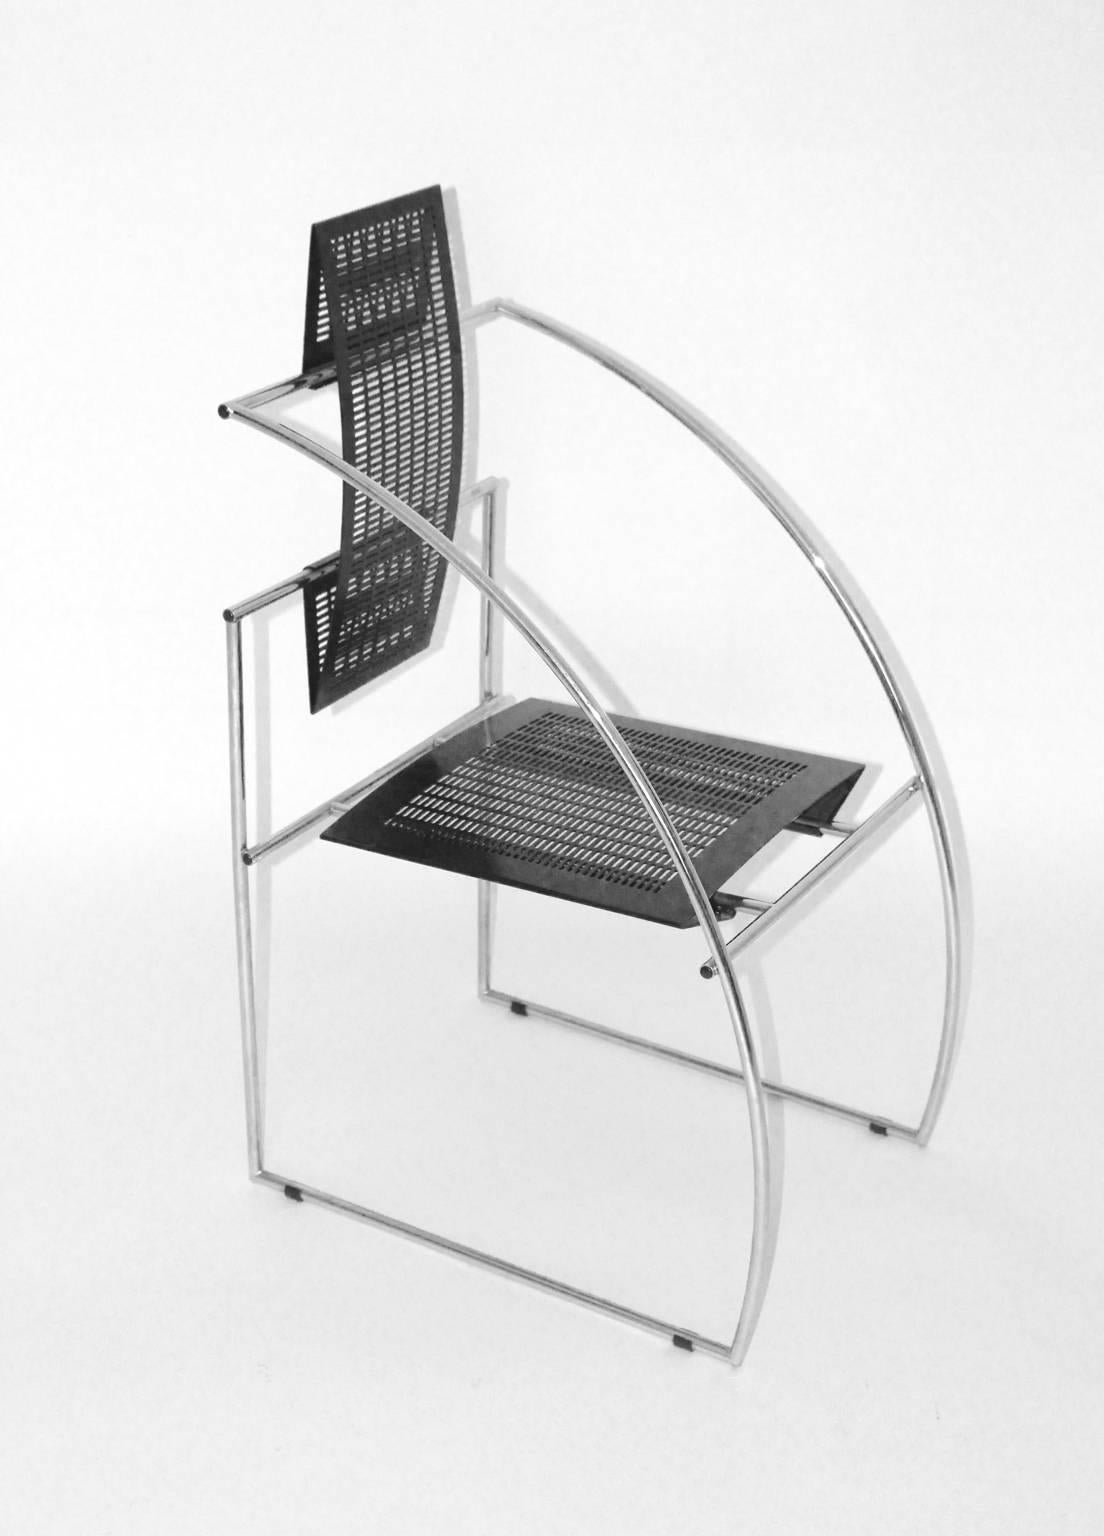 Postmoderner Satz von sechs Sesseln oder Esszimmerstühlen, entworfen von Maria Botta 198, Italien, und ausgeführt von Alias, Italien.
Das Stahlrohrgestell nimmt Kontakt zu Sitz und Rückenlehne aus gelochtem Schwarzblech auf und bildet so diese